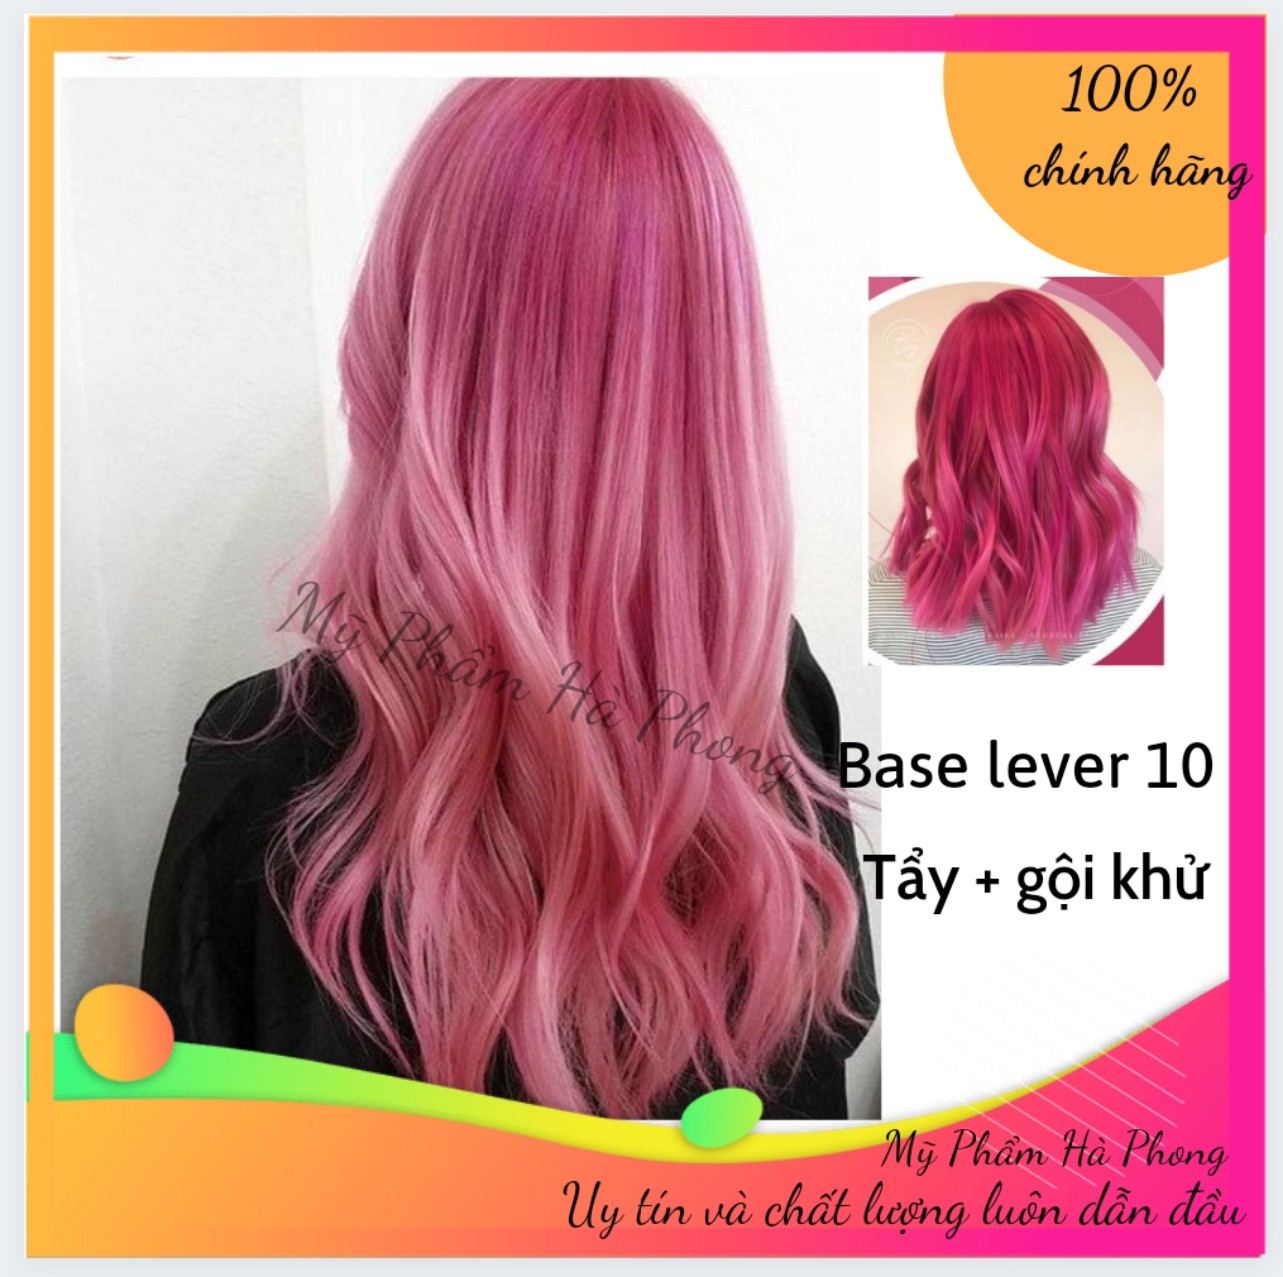 Yêu màu hồng neon và muốn trang điểm cho kiểu tóc của bạn? Cùng xem ngay hình ảnh cách tô điểm tóc hồng neon để thực hiện điều đó nhé!